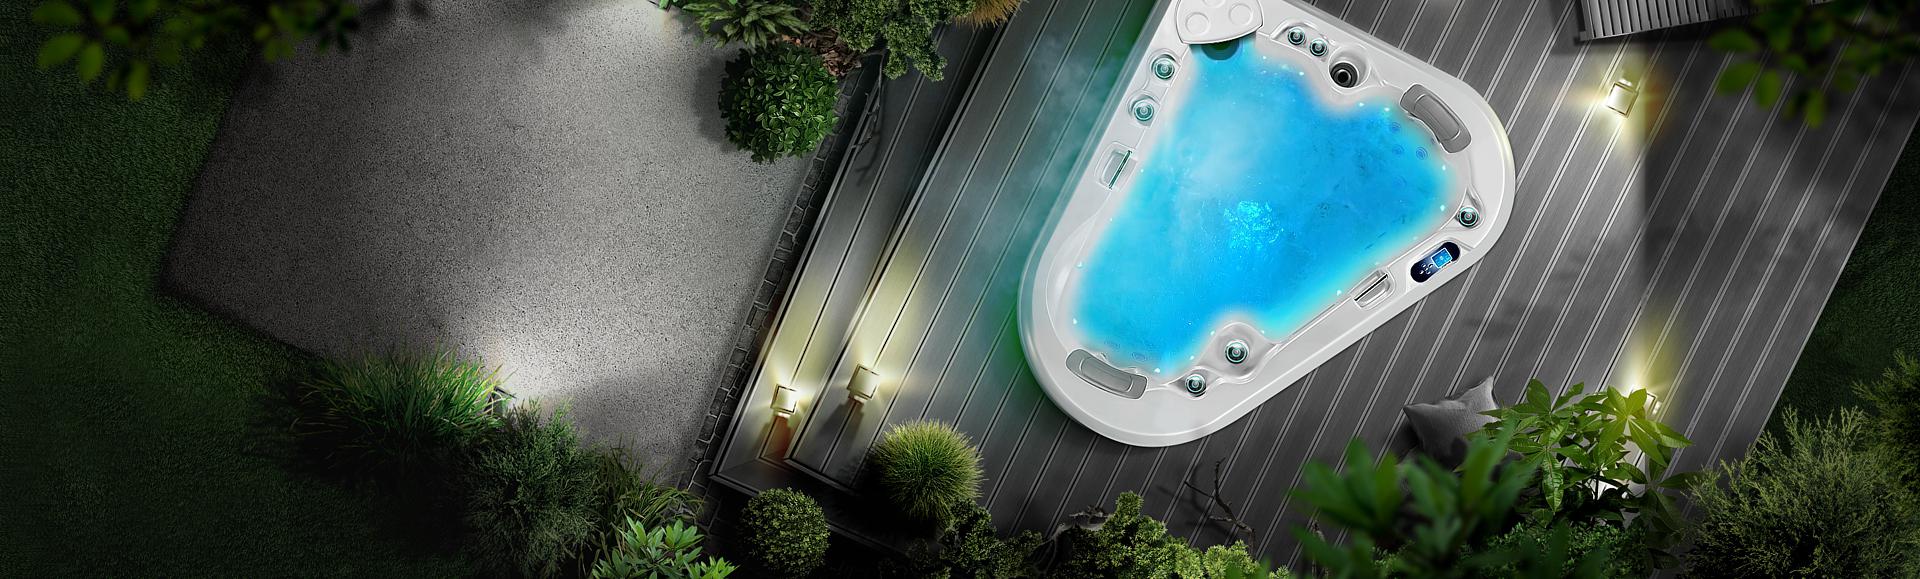 Hot tub outdoor Manta, Canadian Spa